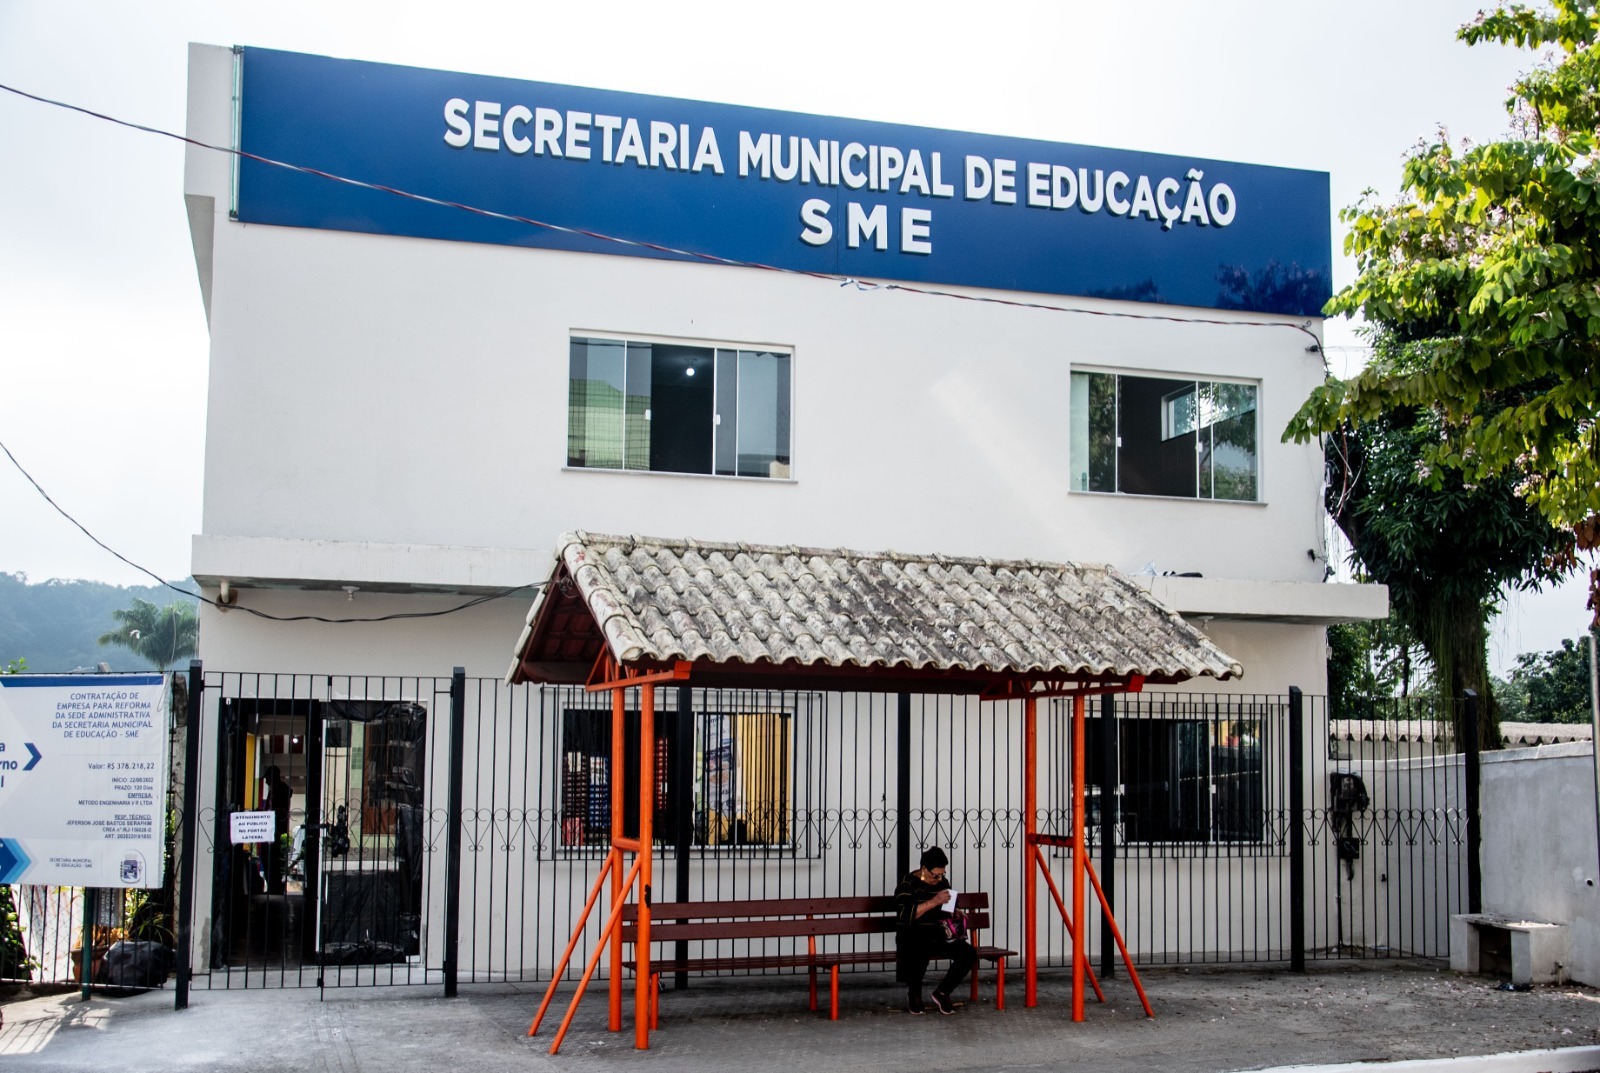 Pais e responsáveis são convocados para efetivação de matrícula em creches municipais de Pinheiral